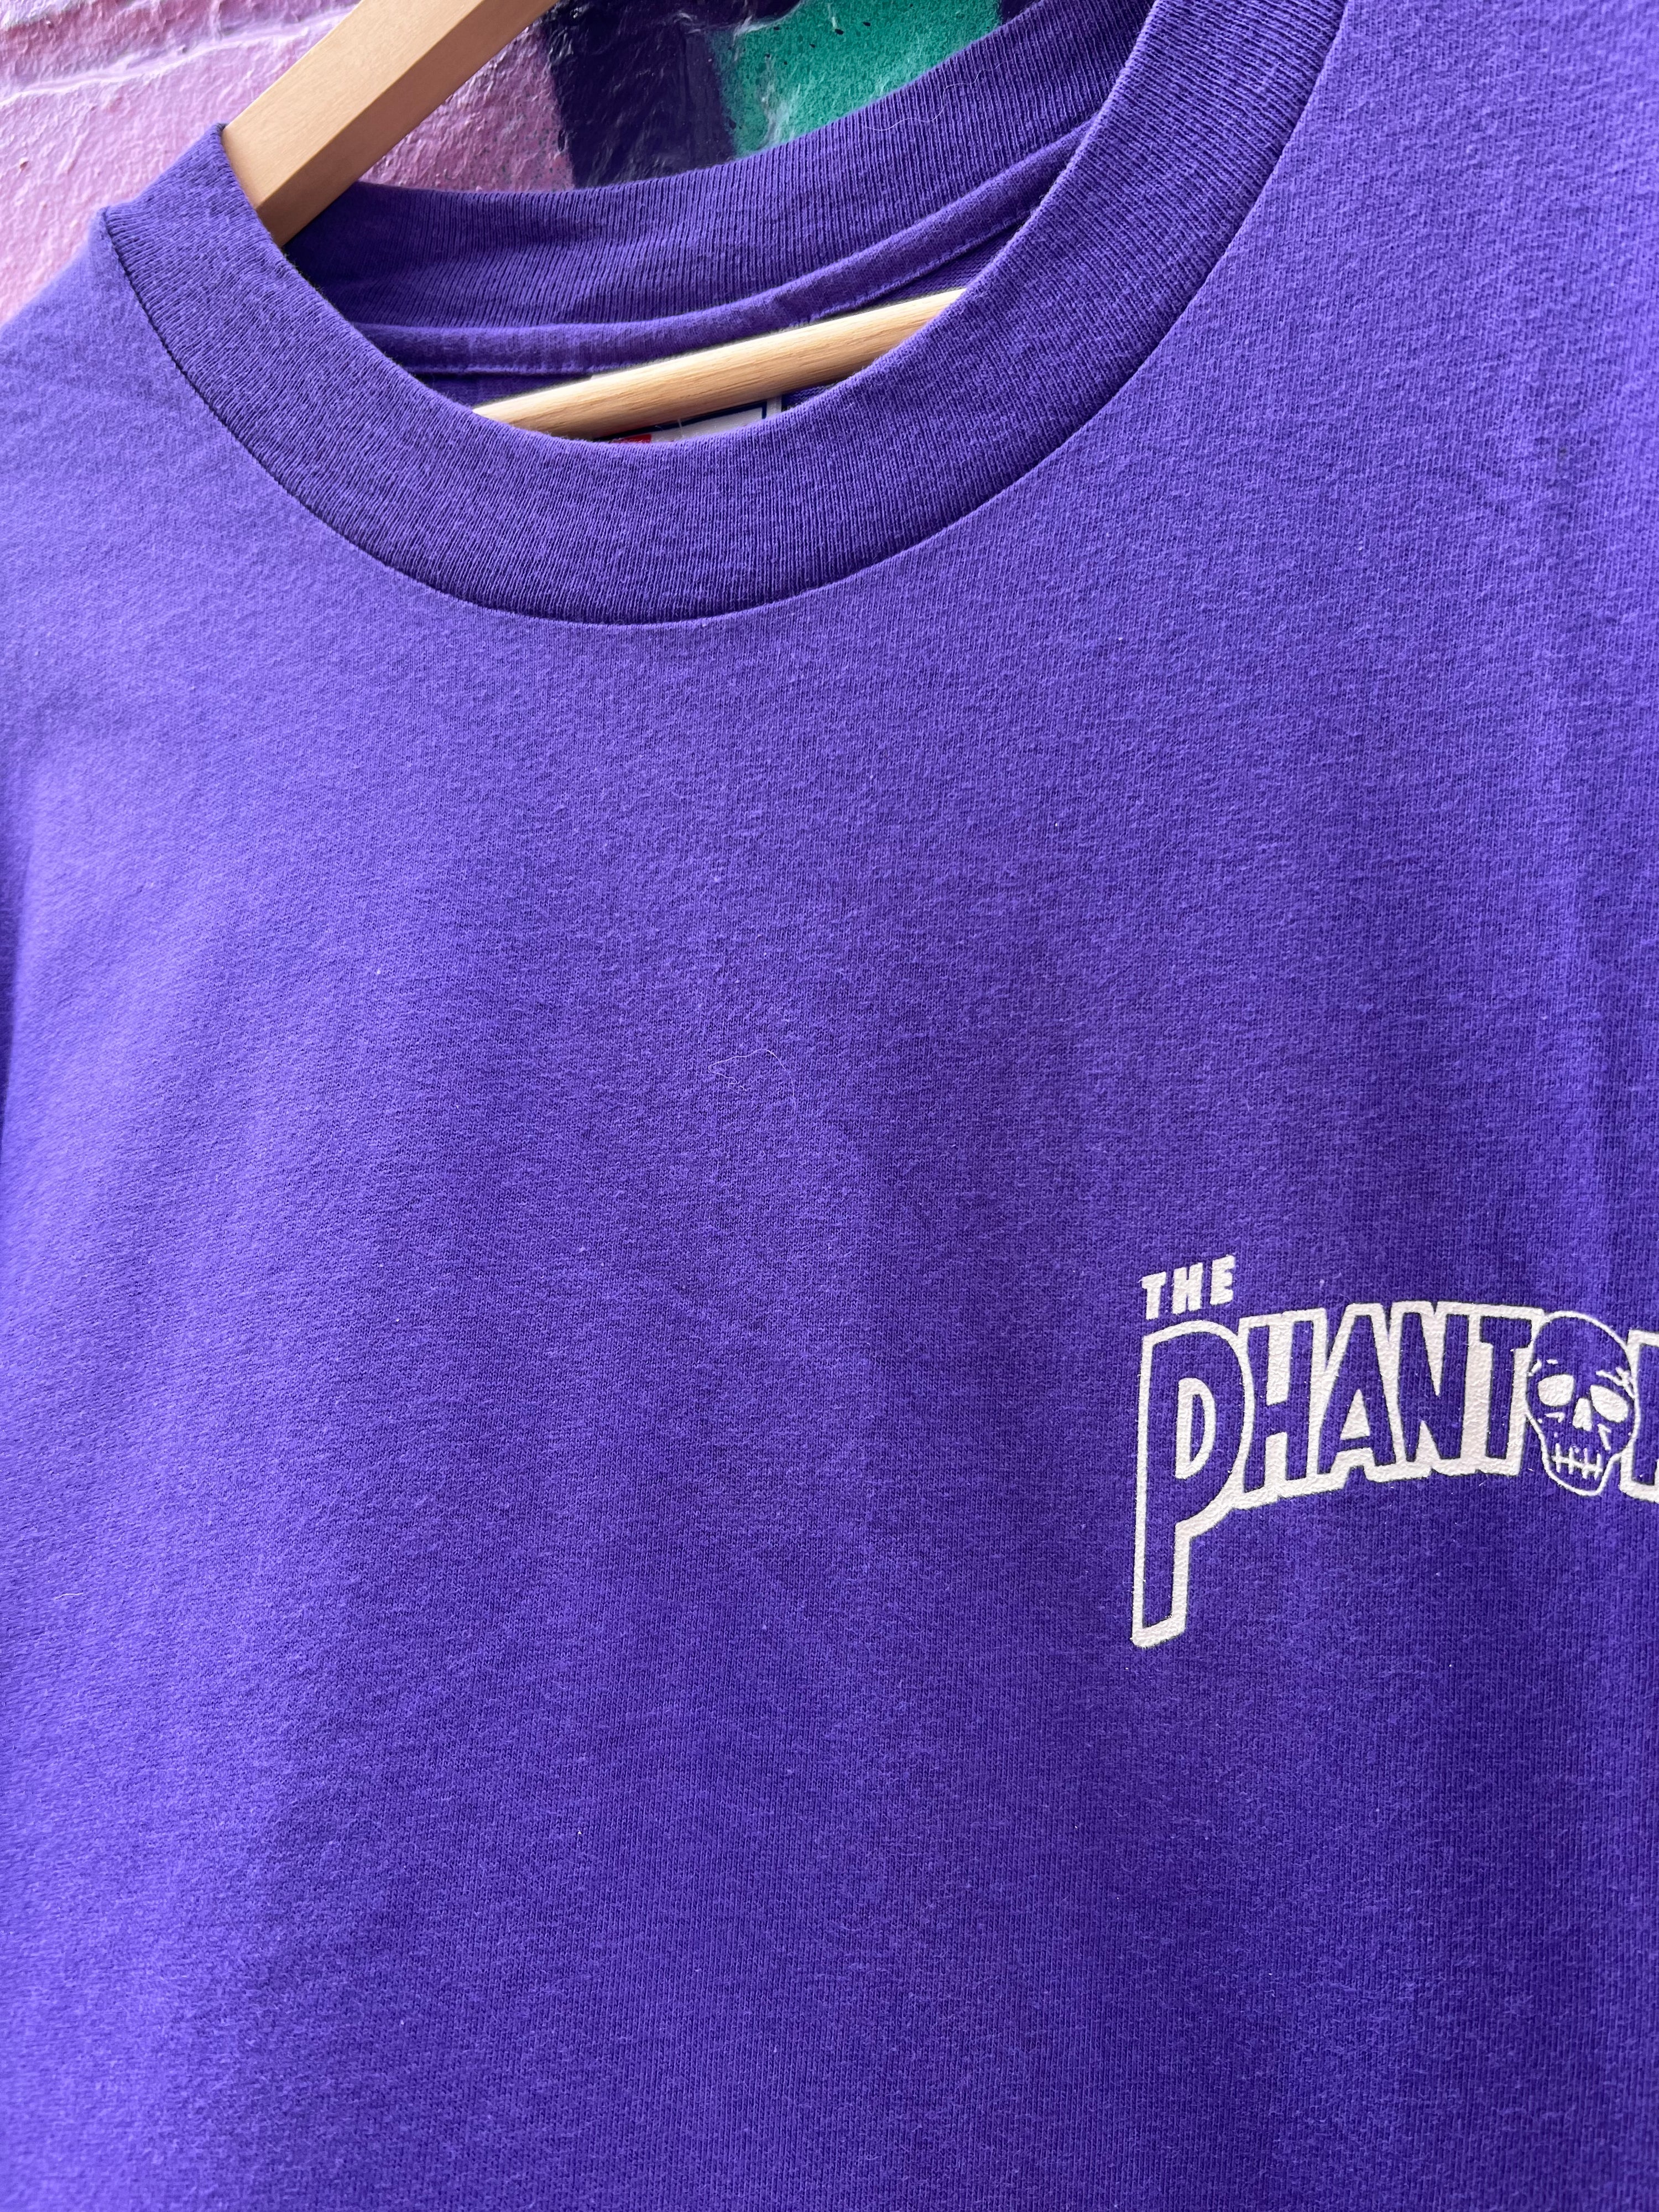 XL - 1996 The Phantom Punching Rear Purple